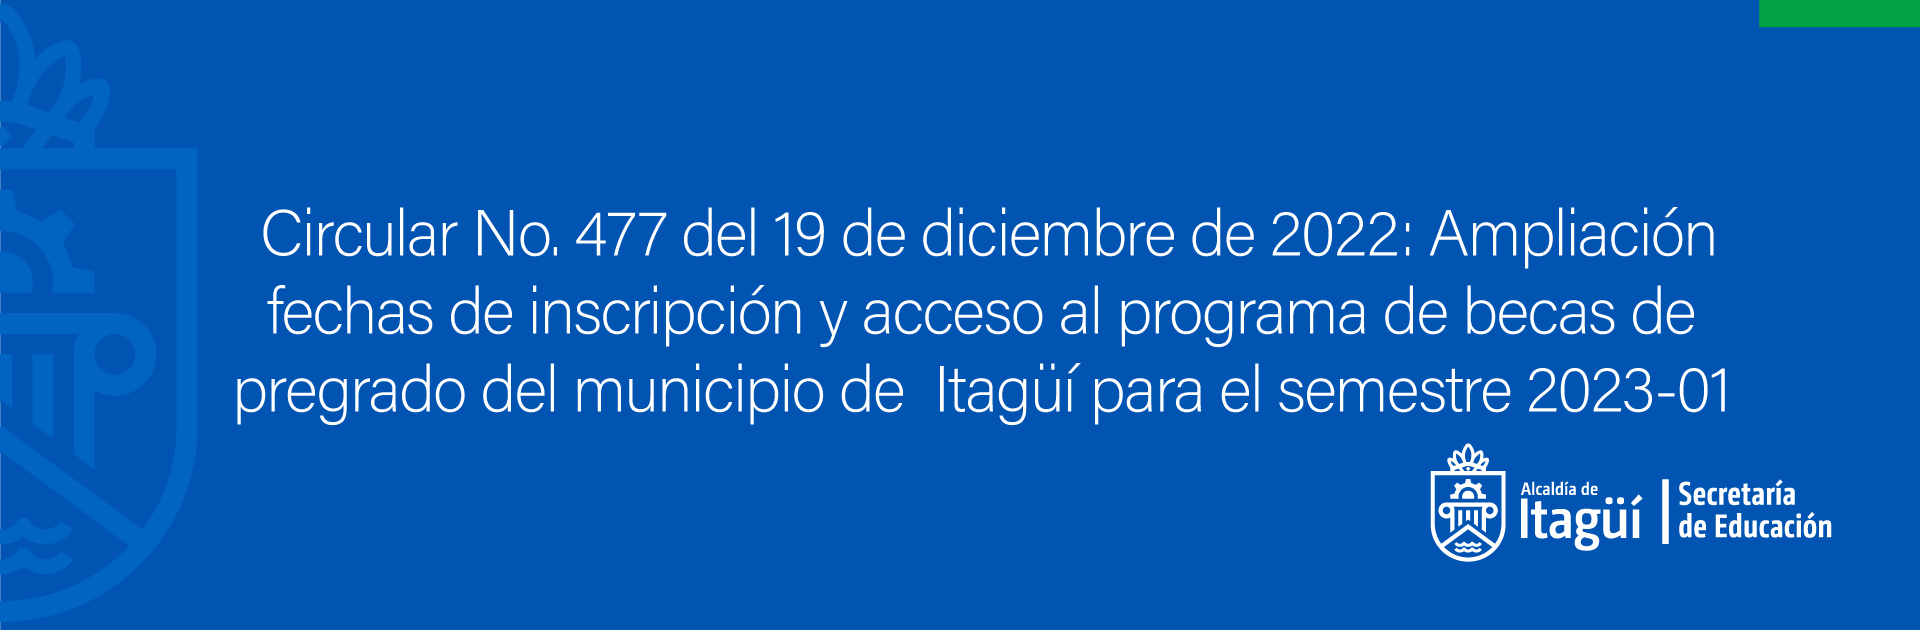 Ampliación fechas de inscripción y acceso al programa de becas de pregrado del municipio de  Itagui para el semestre 202301